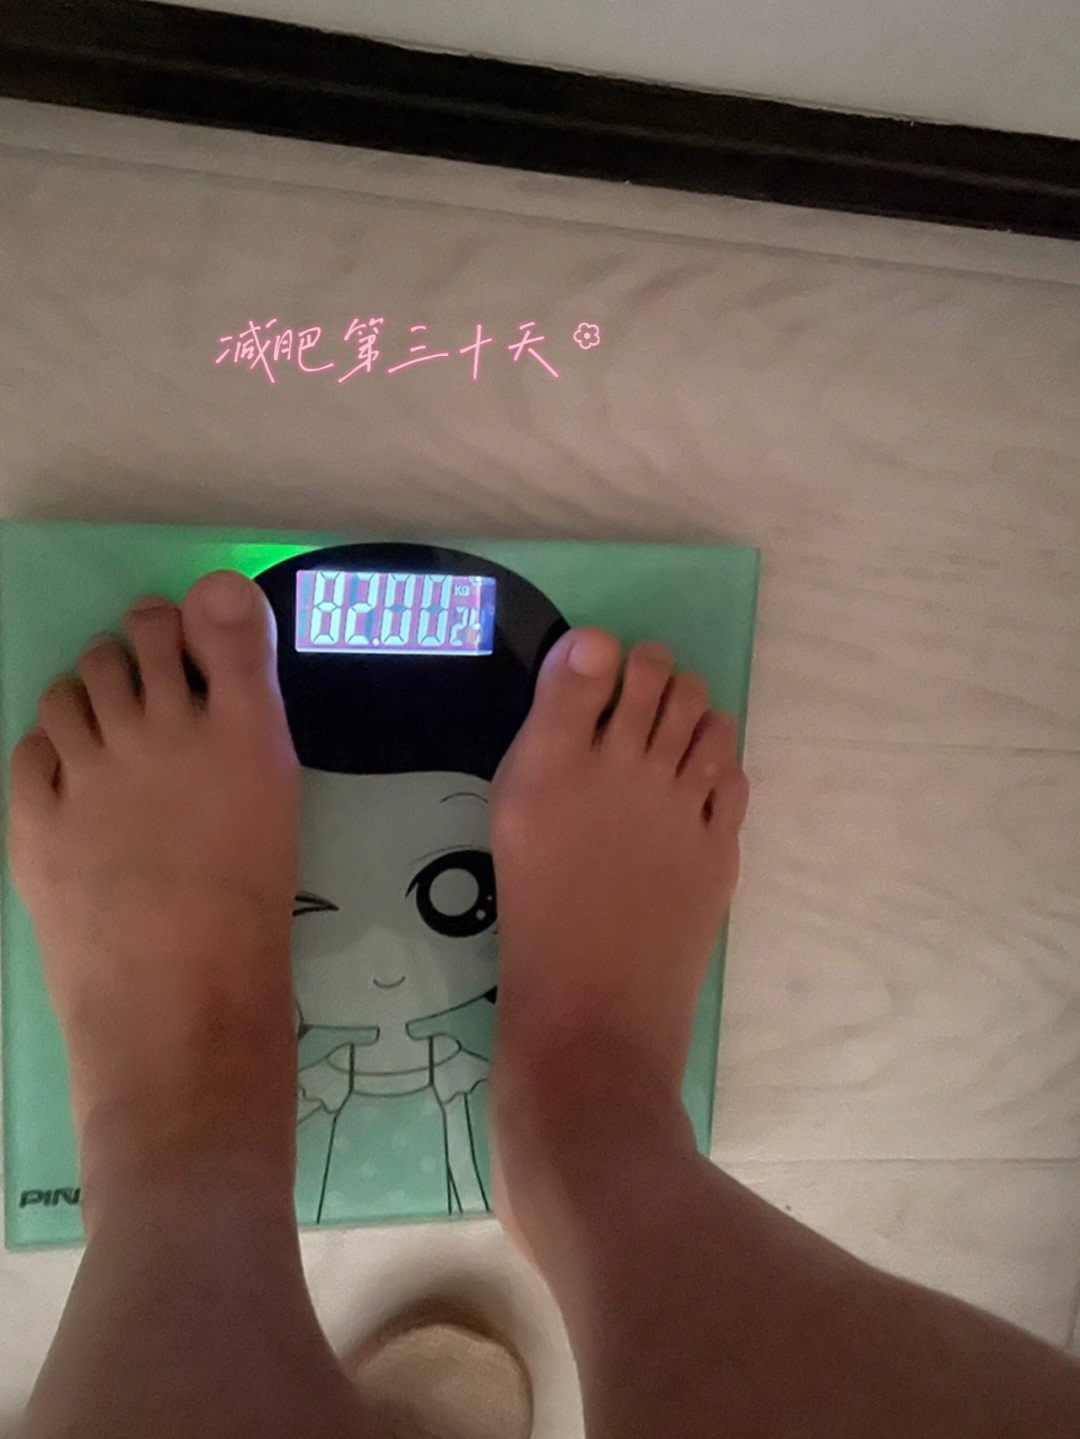 体重82公斤,原体重8415公斤,累计减重4